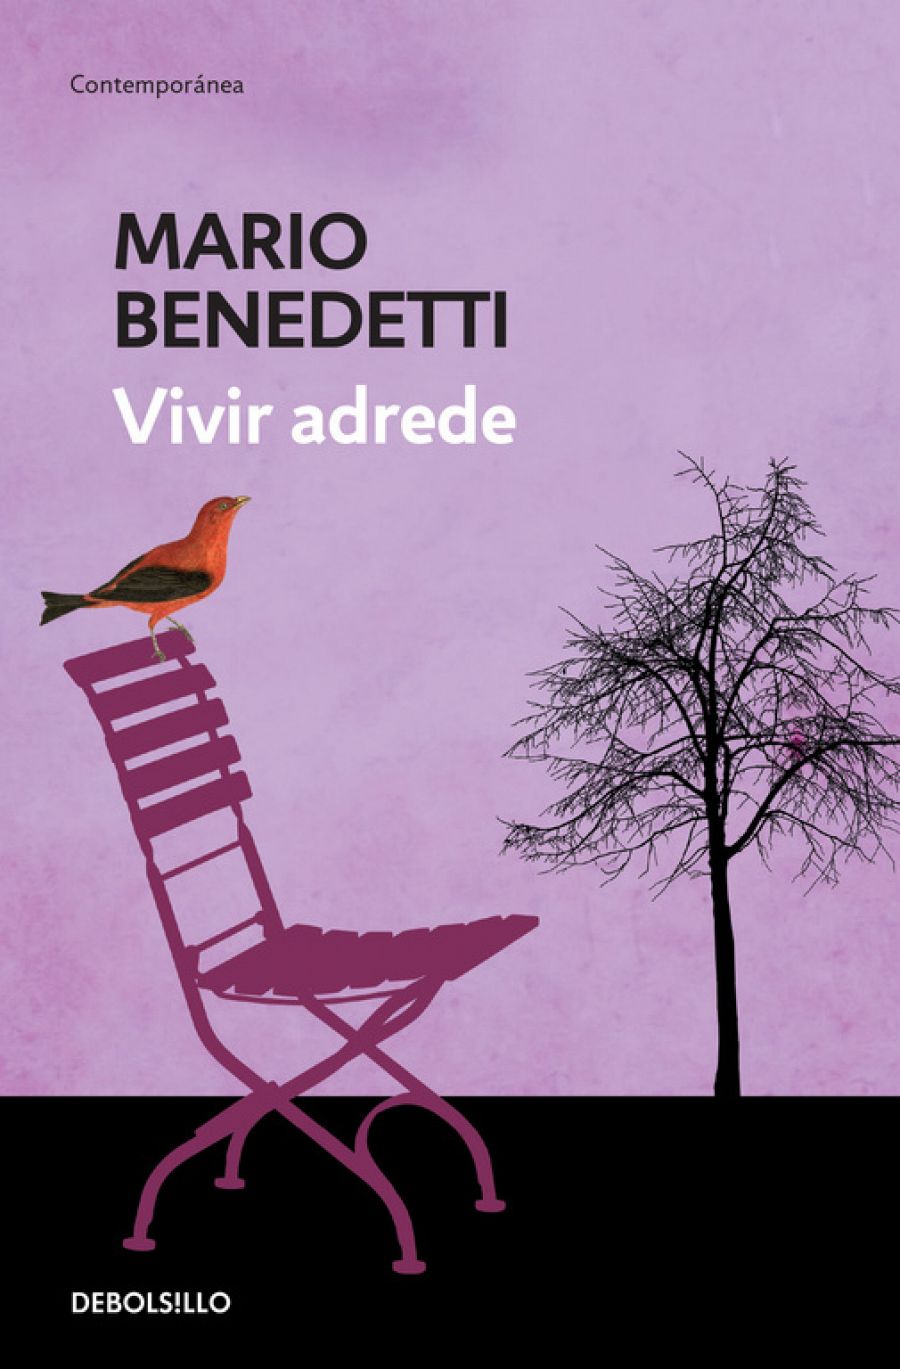 Cien años de Mario Benedetti: sus 10 libros más vendidos l RTVE